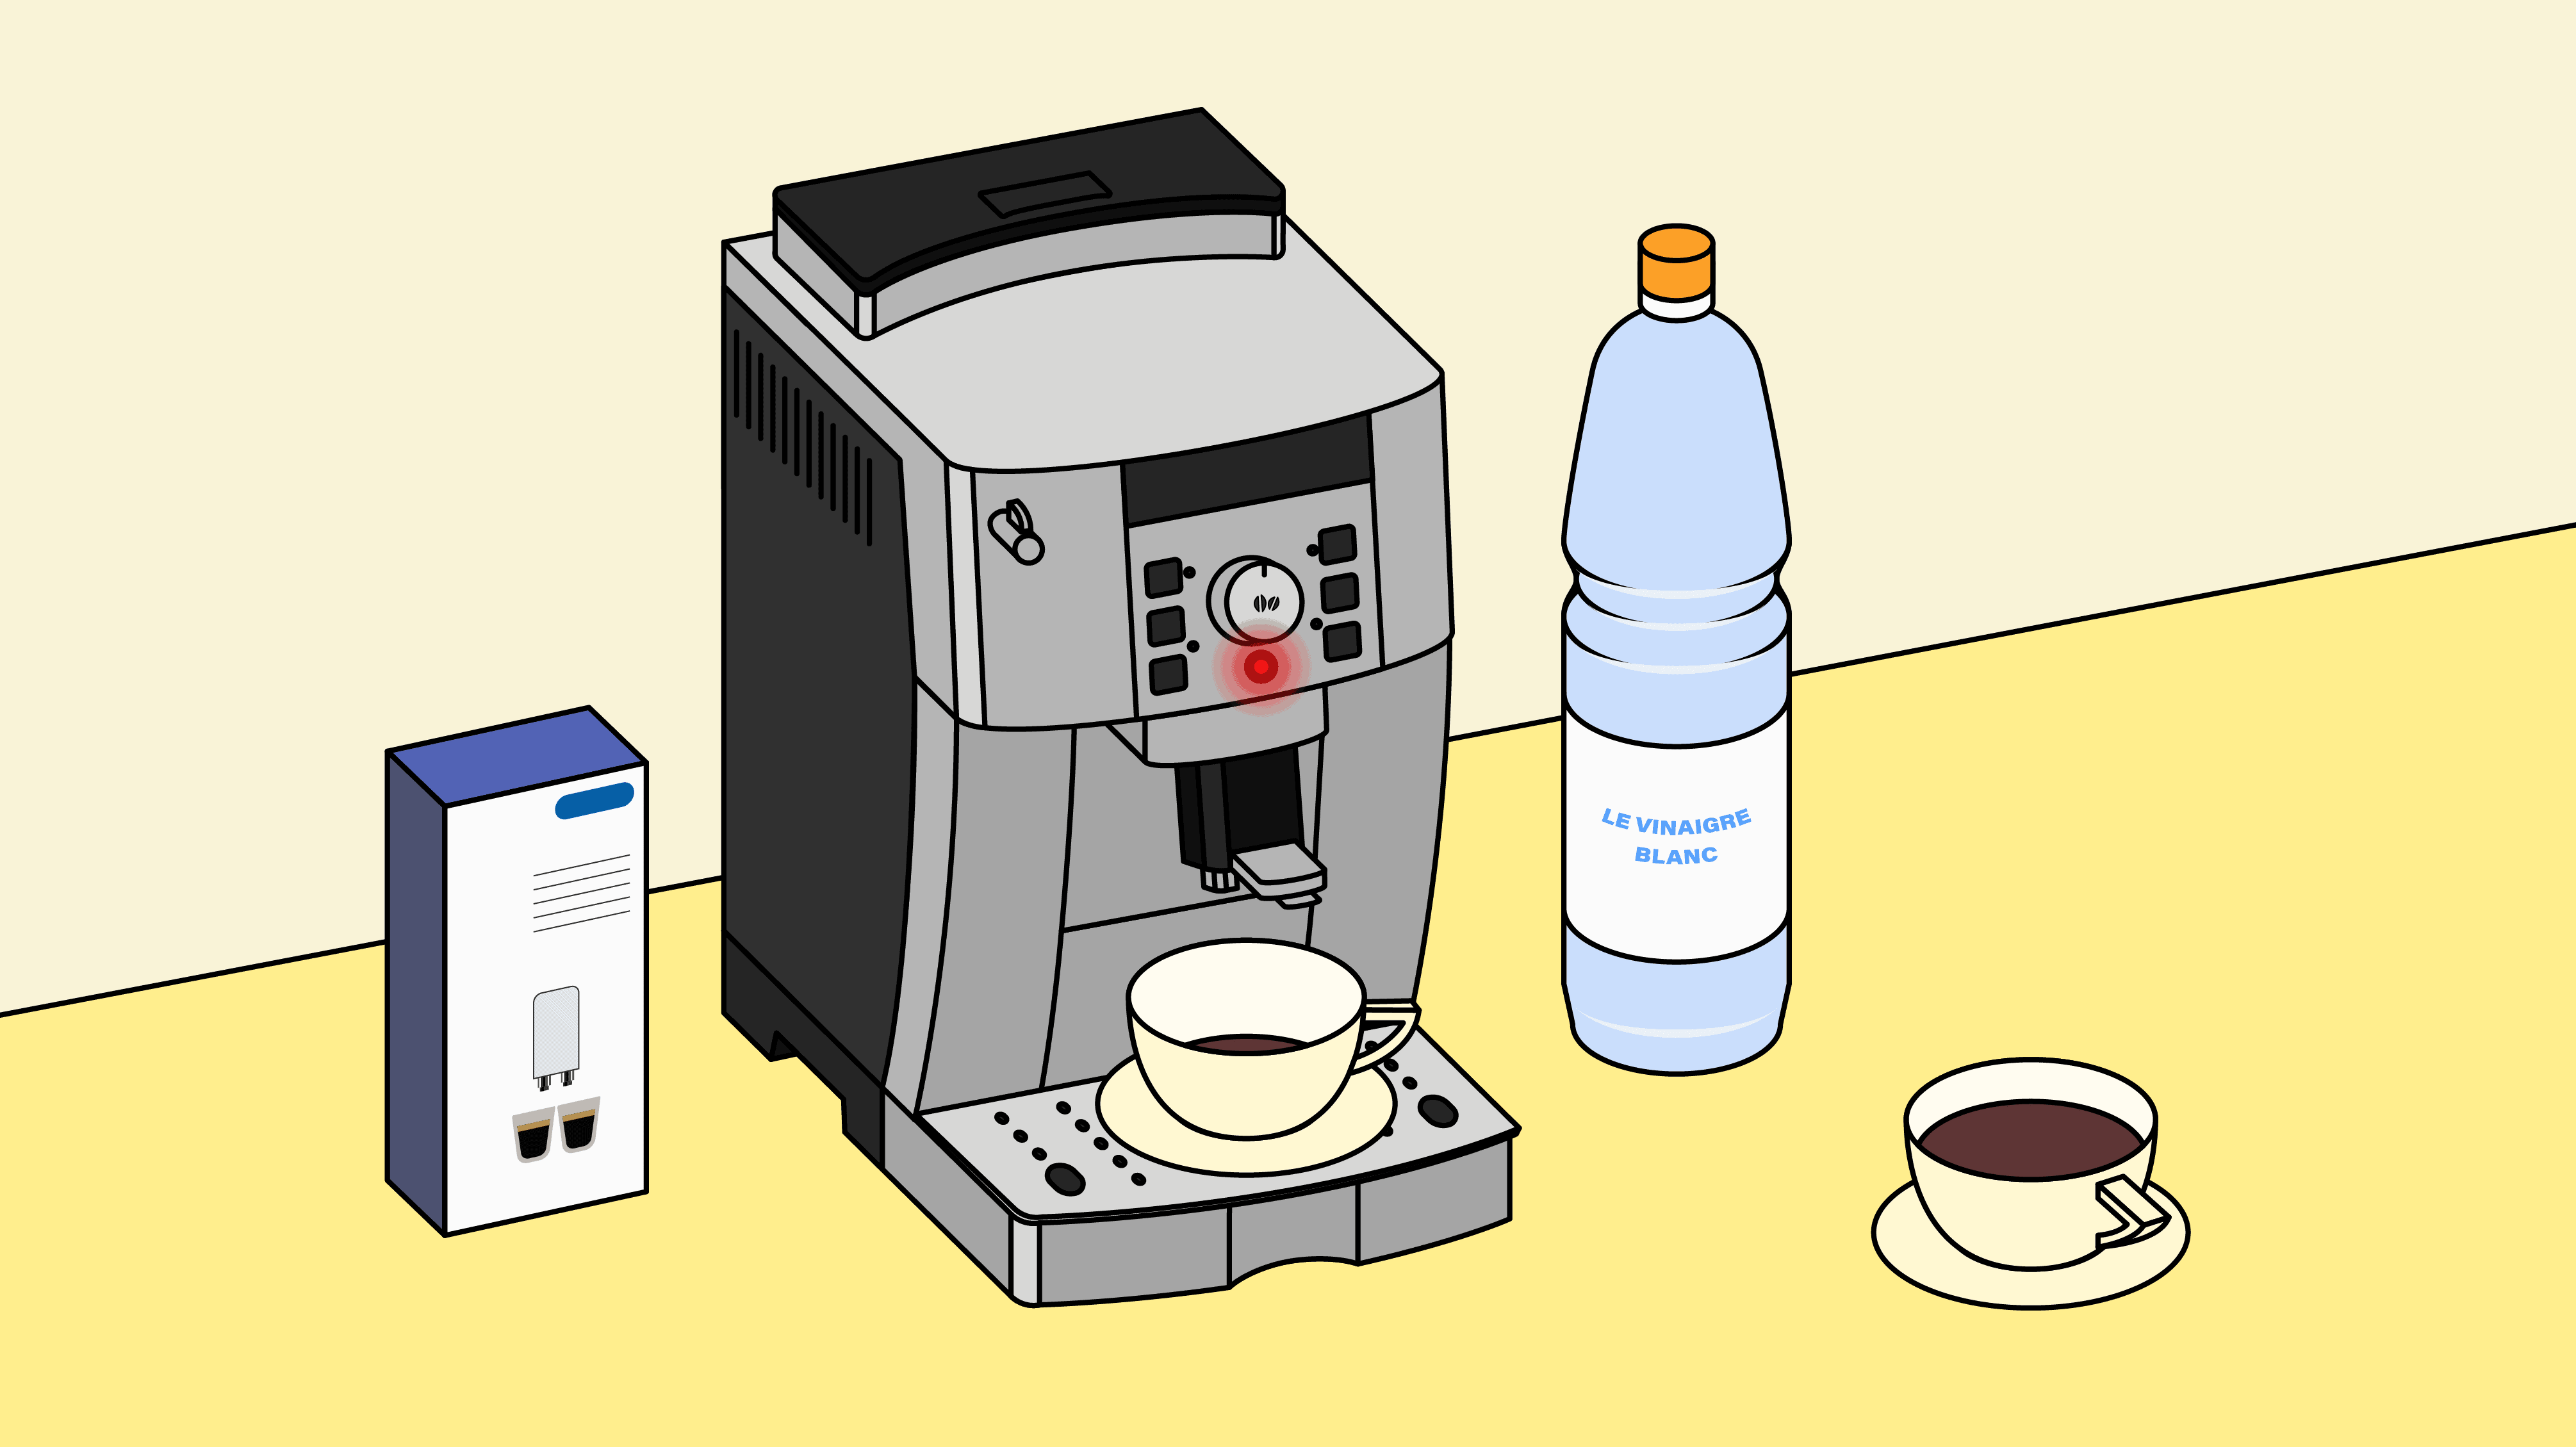 Comment faire le détartrage de sa machine à café De Longhi (Magnifica) ?